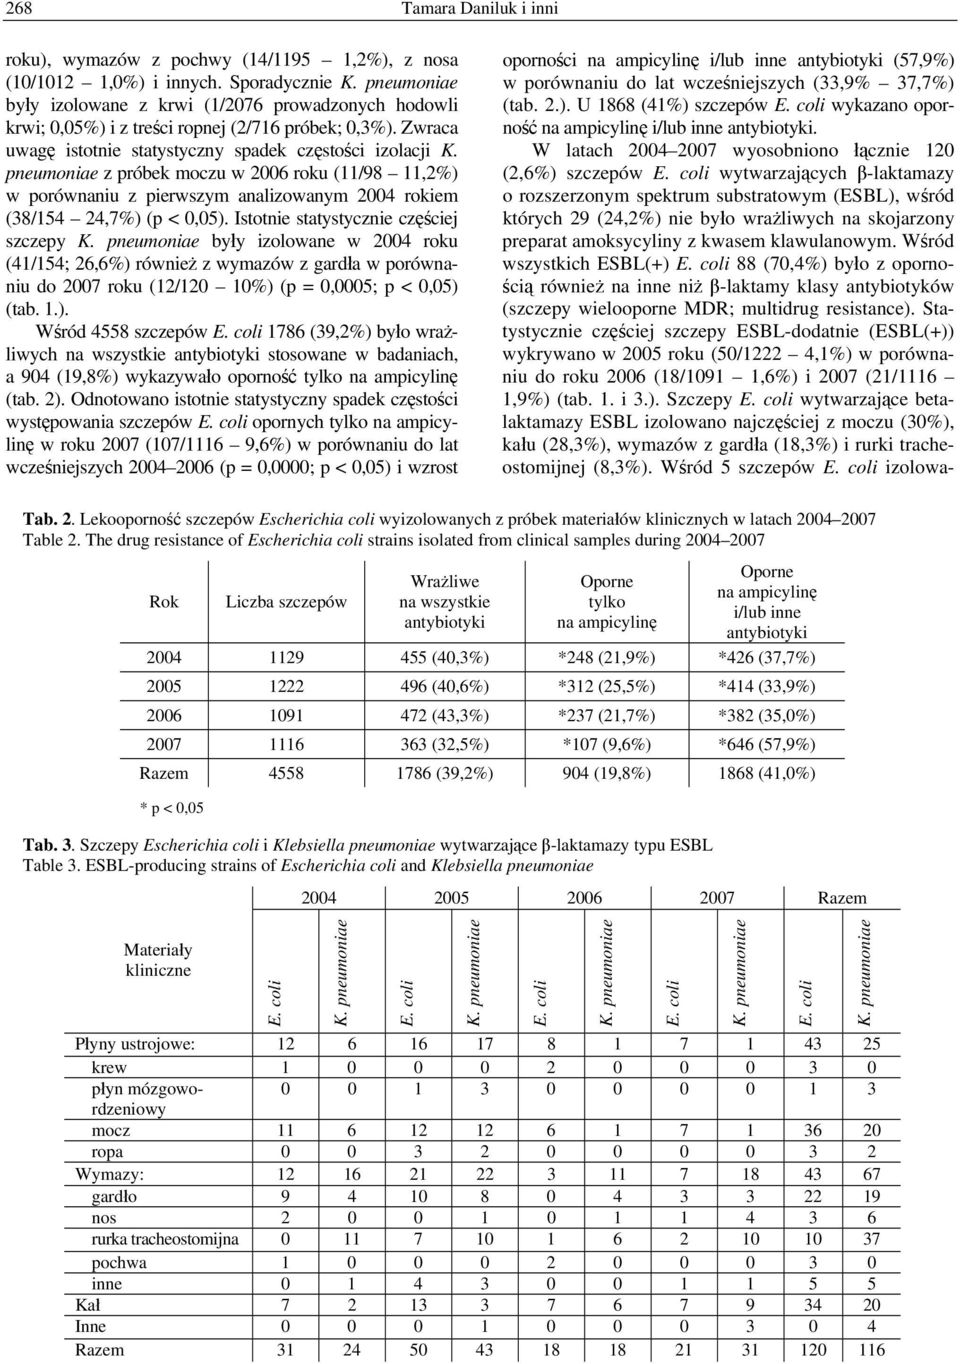 pneumoniae z próbek moczu w 2006 roku (11/98 11,2%) w porównaniu z pierwszym analizowanym 2004 rokiem (38/154 24,7%) (p < 0,05). Istotnie statystycznie częściej szczepy K.